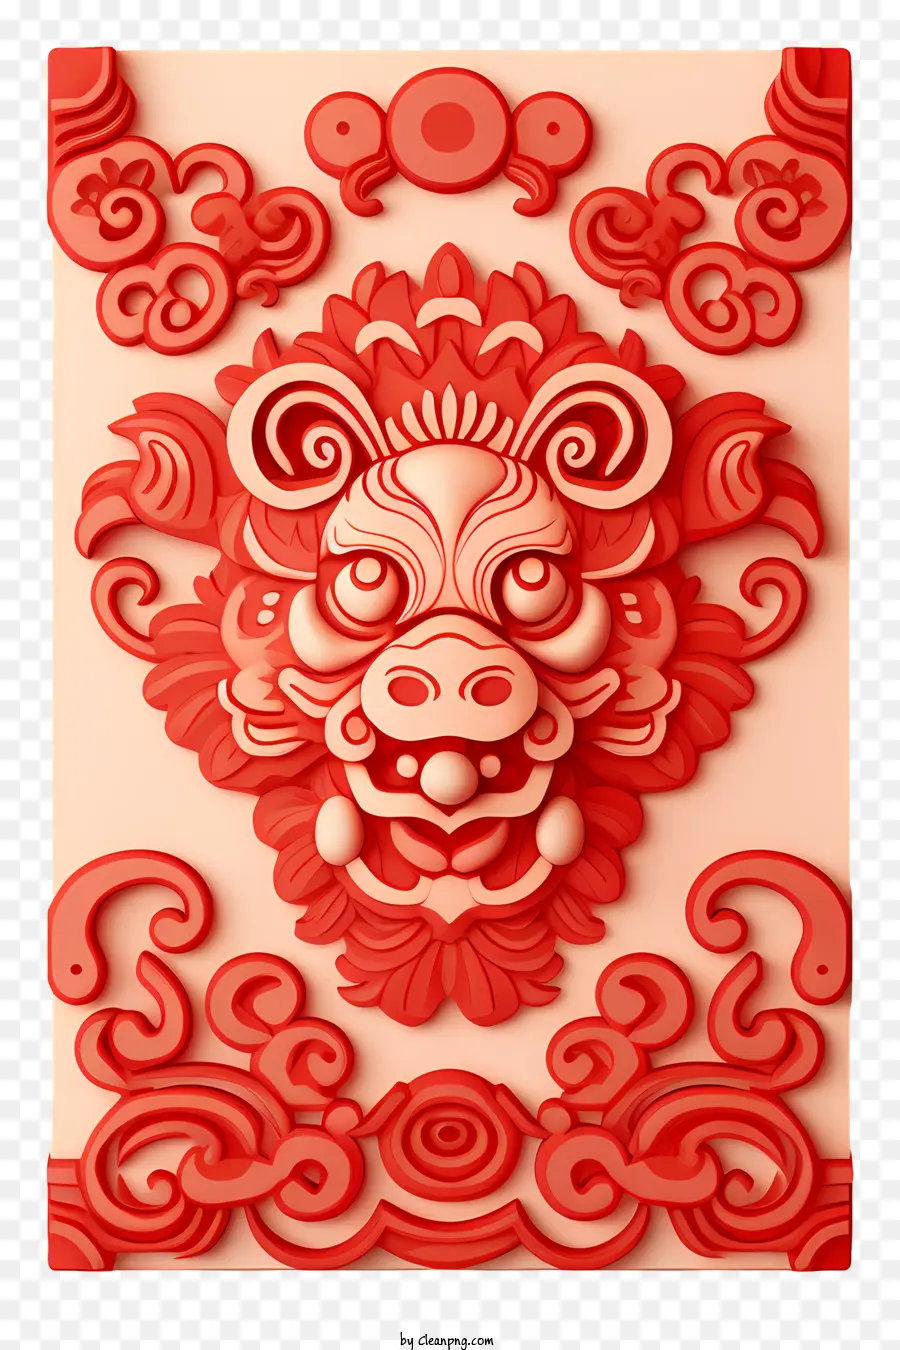 il nuovo anno cinese - Il design intricato del drago rosso trasuda pace e serenità